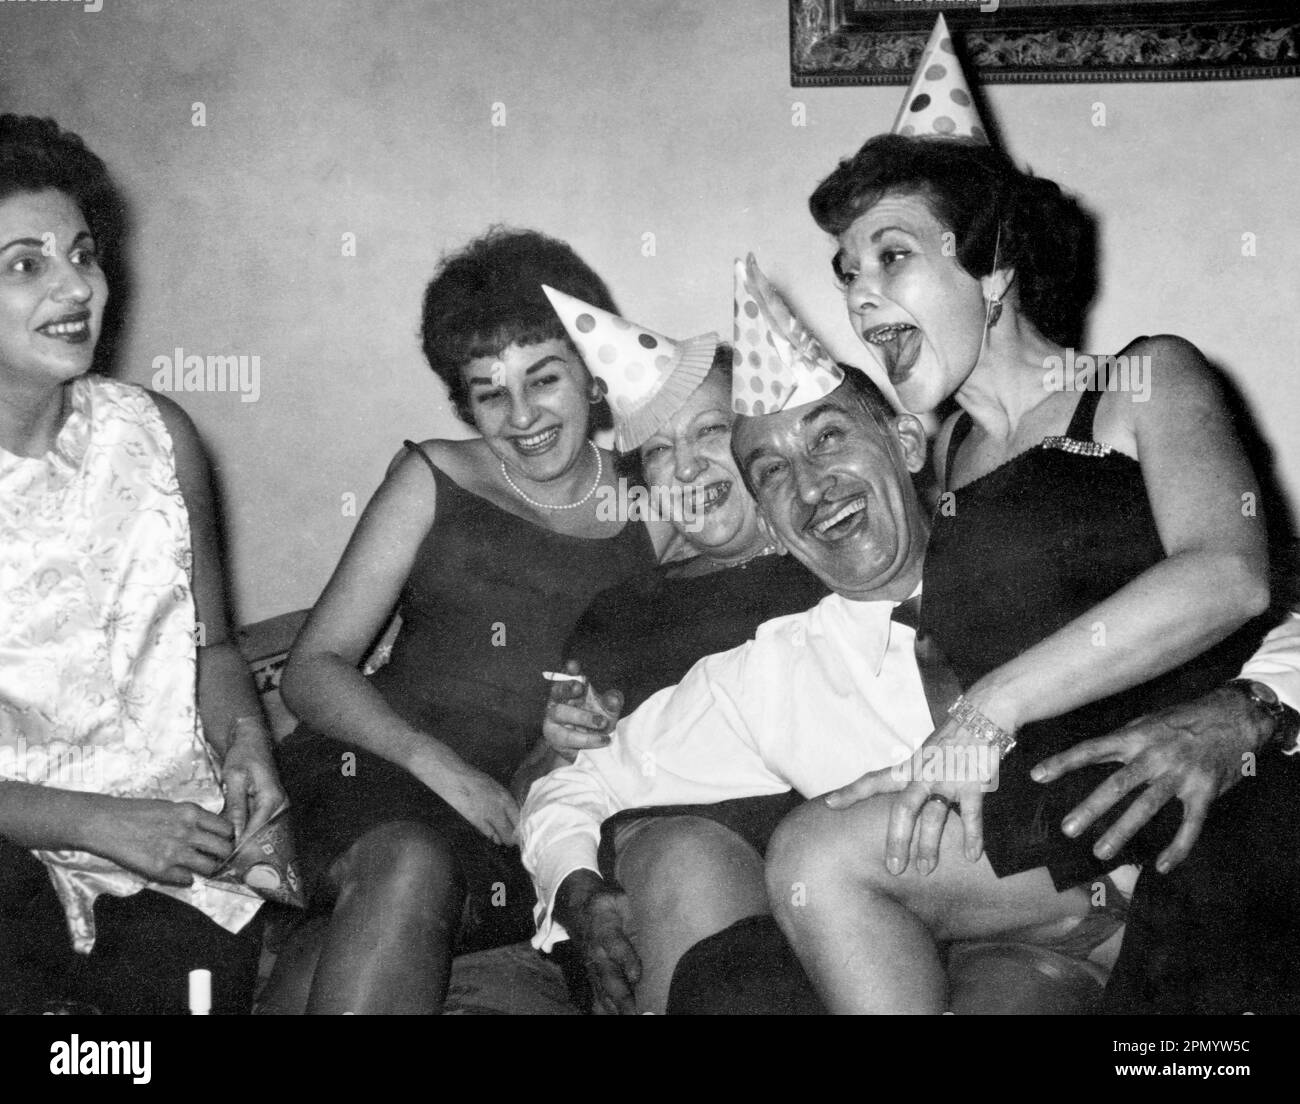 Circa 1960: adulti che festeggiano a casa con cappelli da festa, USA., originale fotografia vintage in bianco e nero. Foto Stock